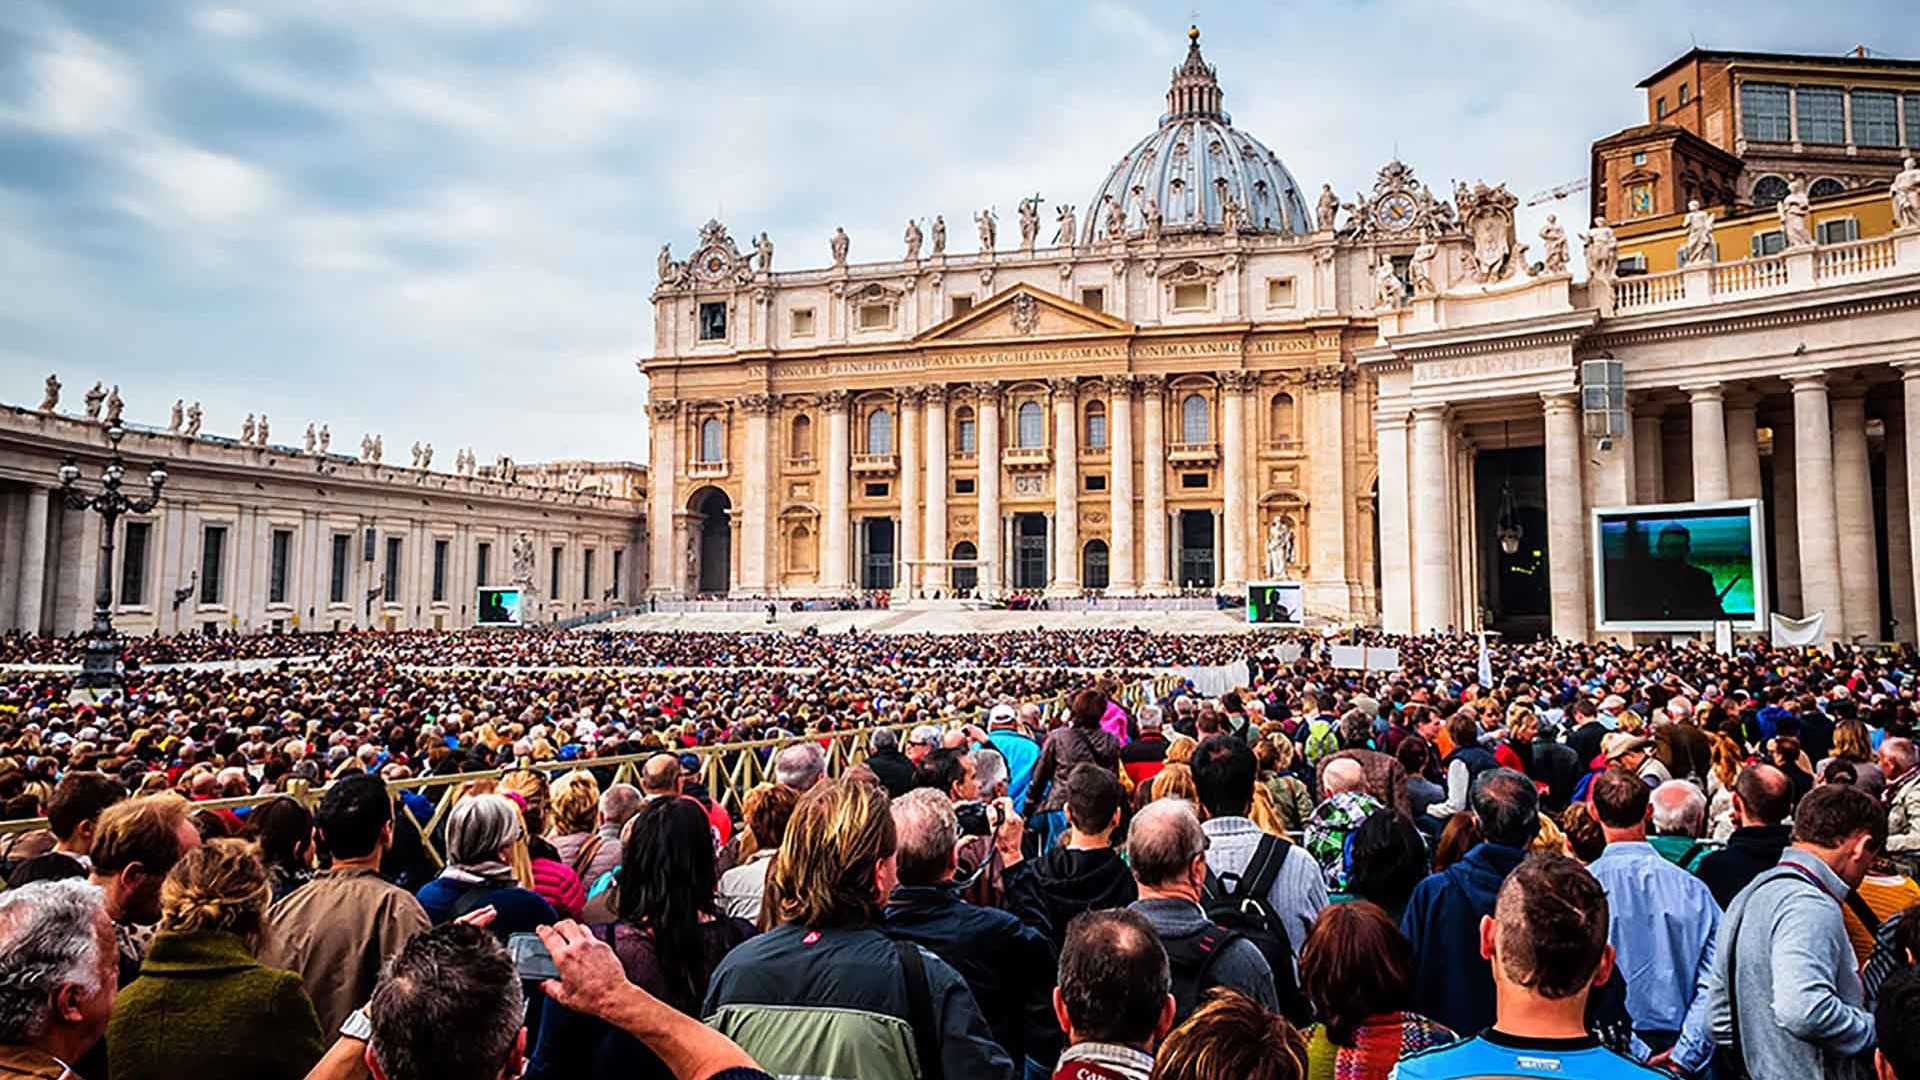 Vatican - Một quốc gia đặc biệt